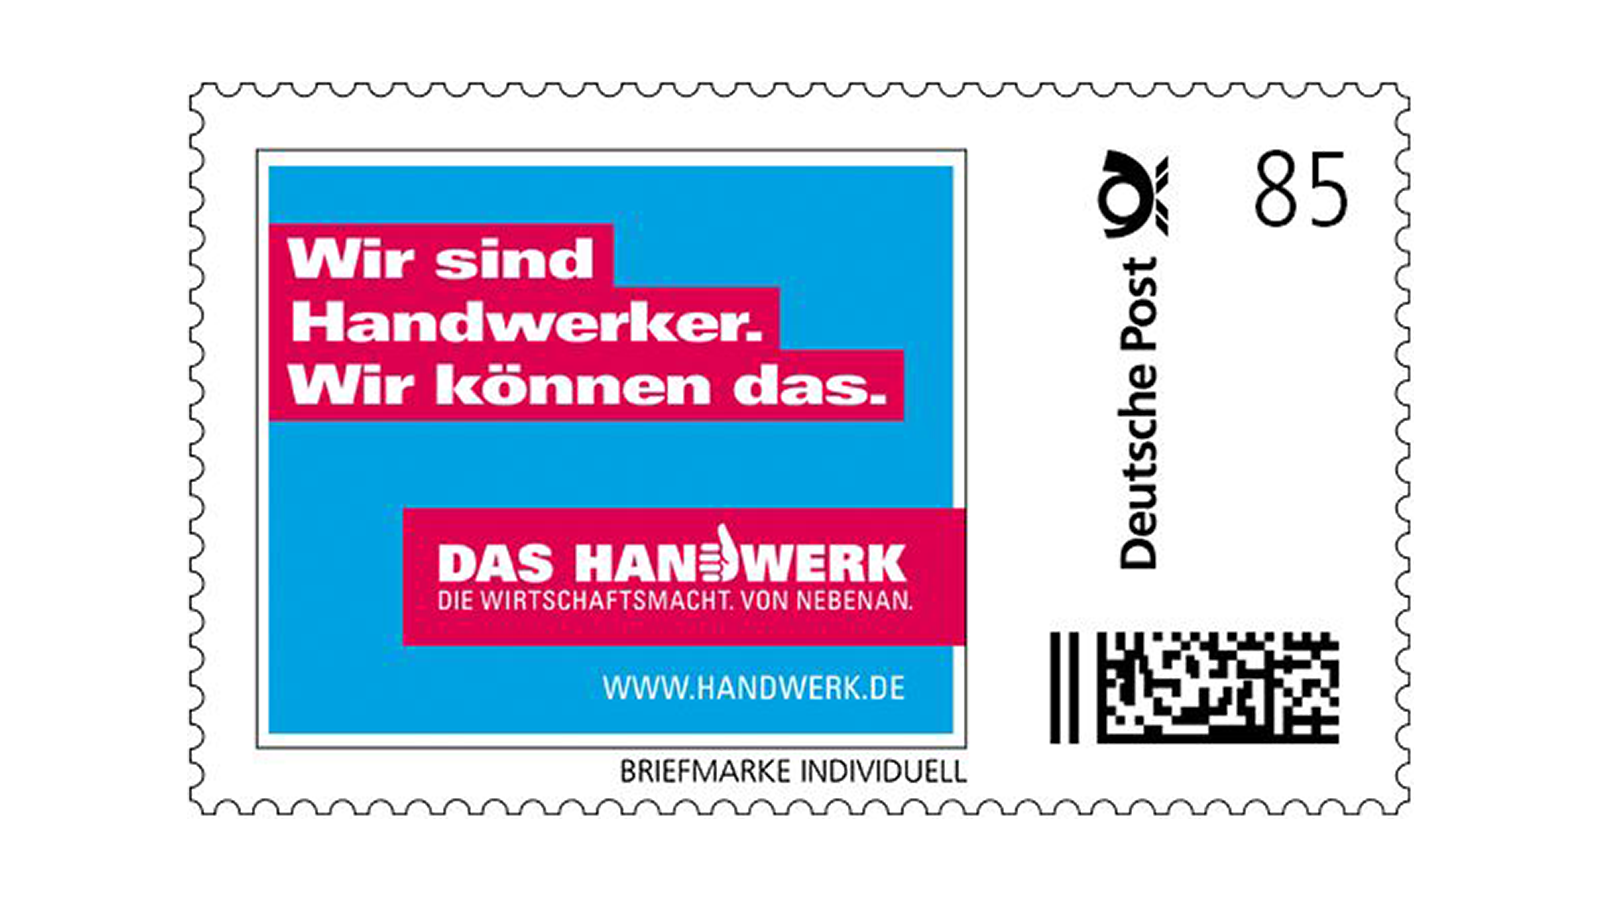 Briefmarke im Handwerk Design